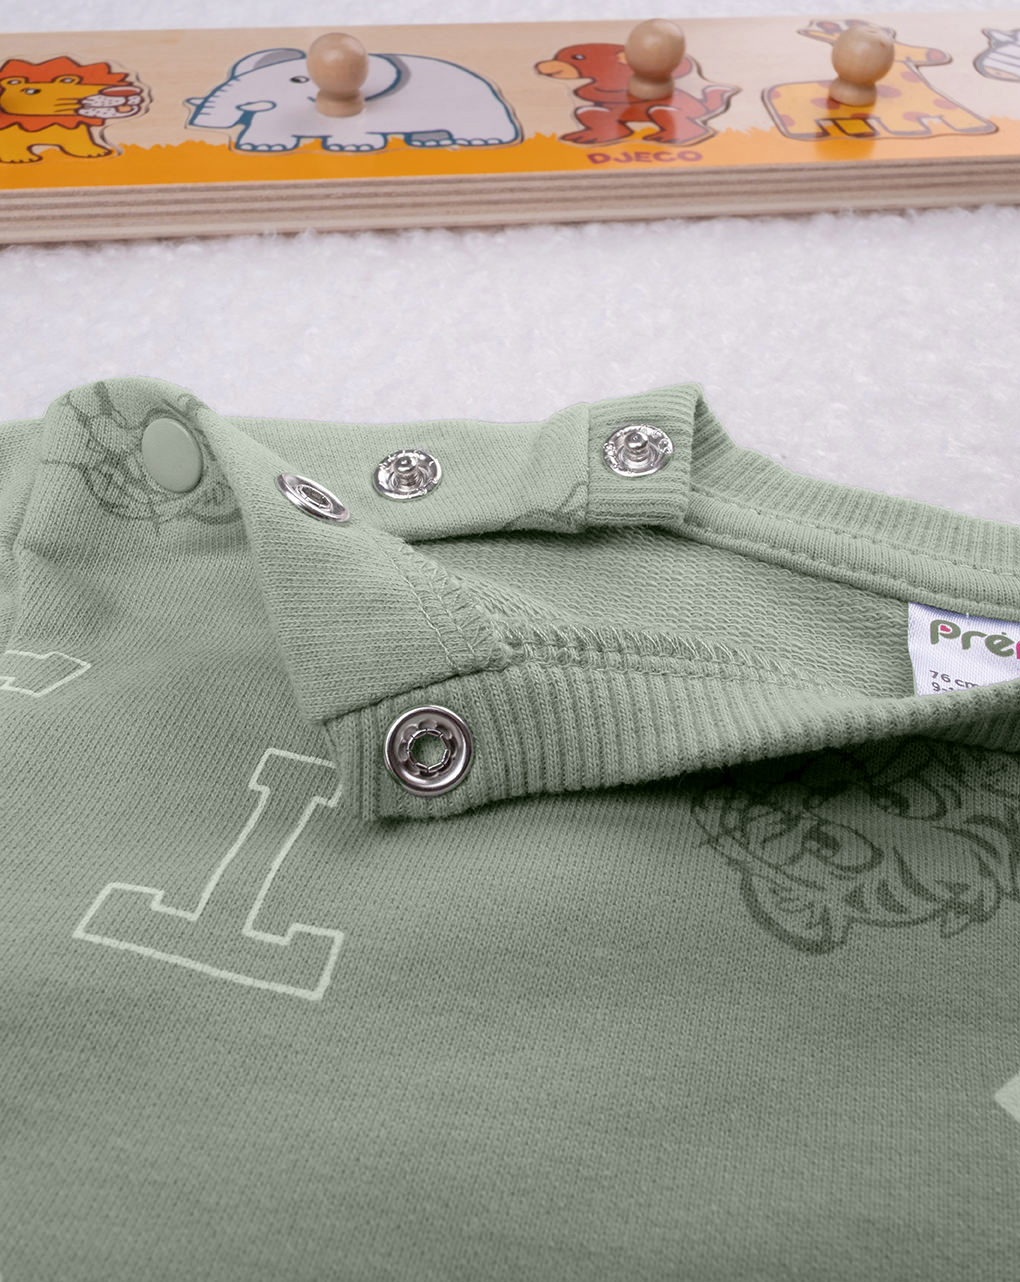 βρεφική μπλούζα φούτερ χακί με τίγρη για αγόρι - Prénatal